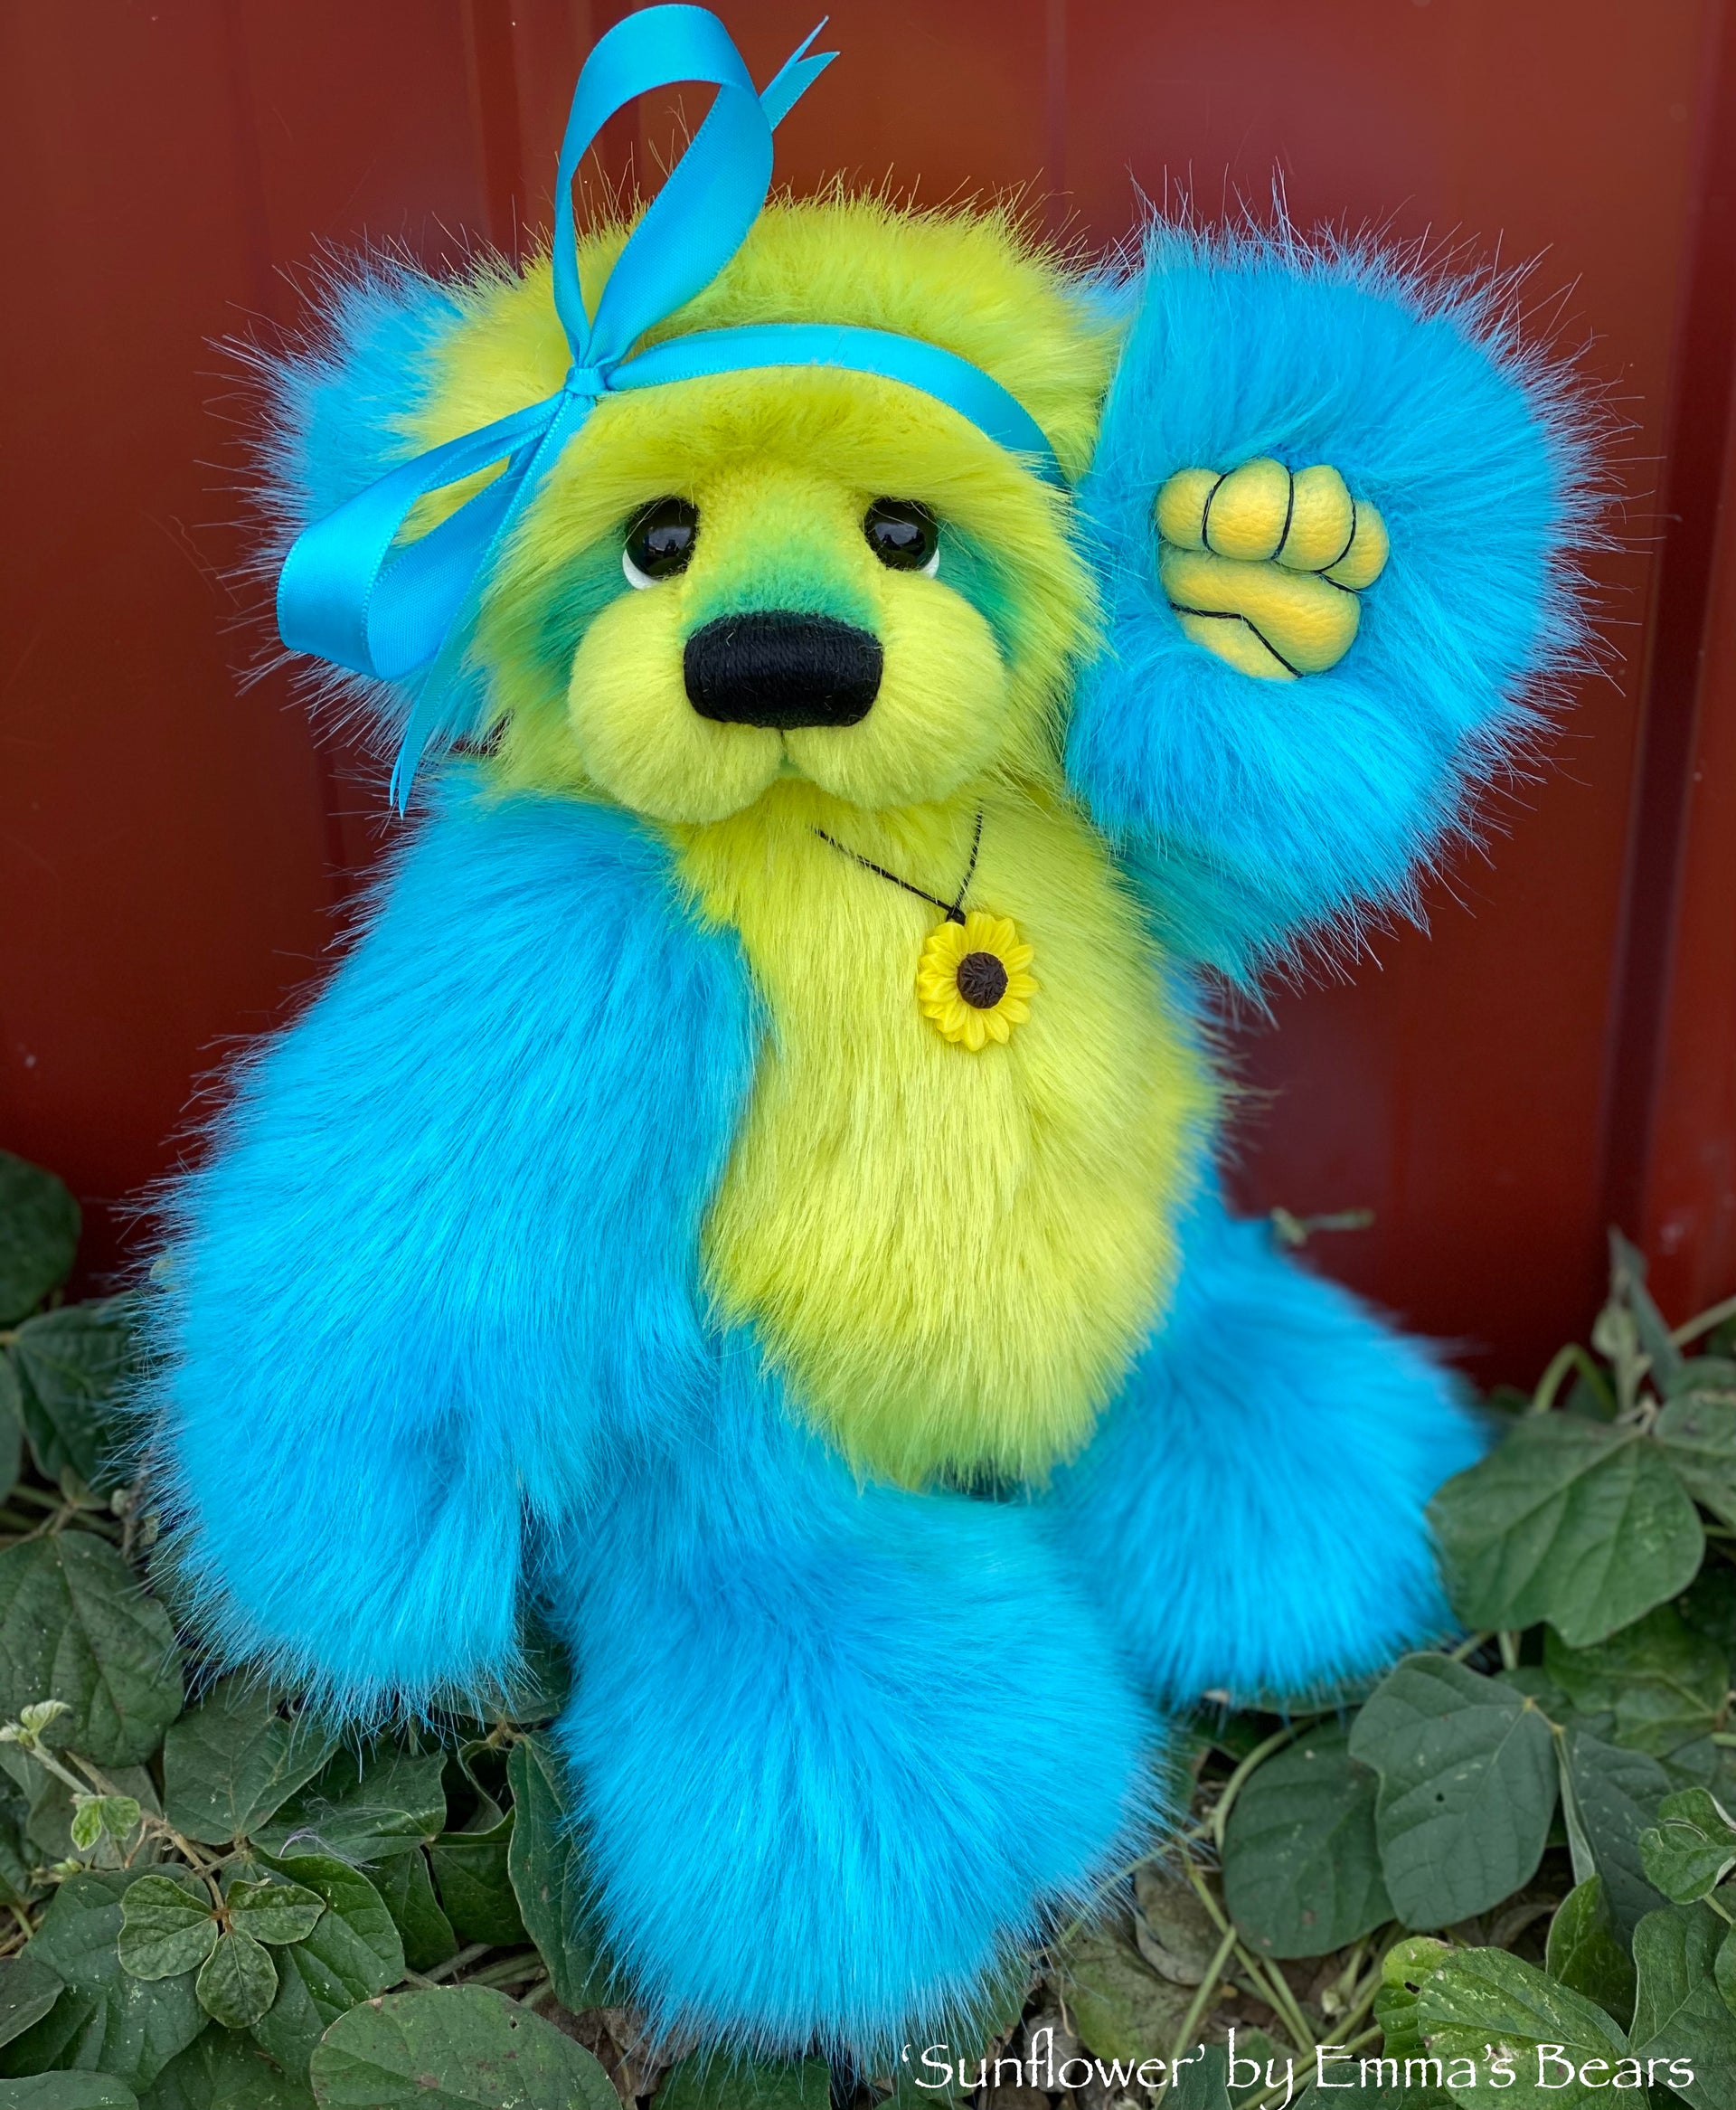 Sunflower - 12" faux fur artist bear by Emmas Bears - OOAK